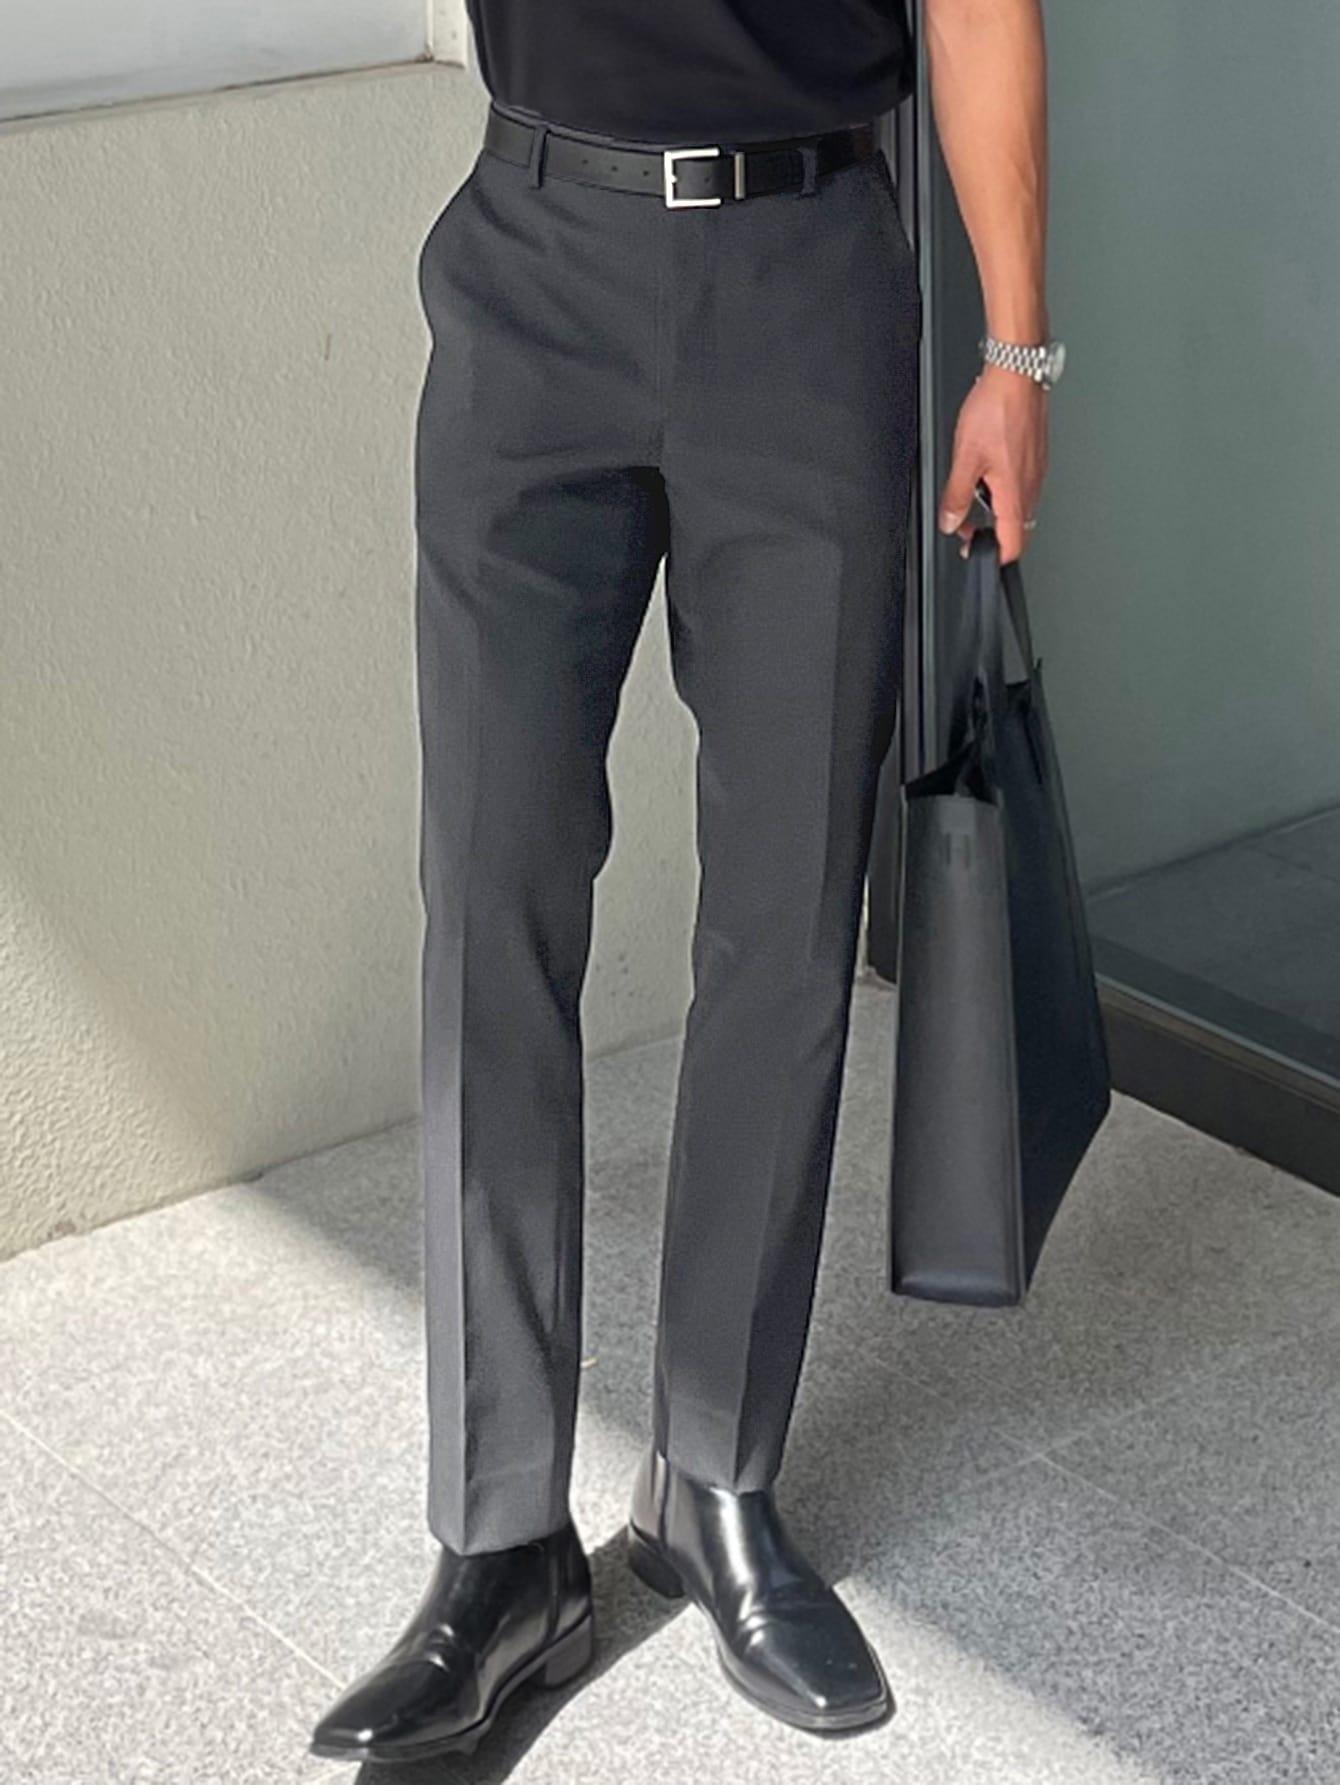 Mbfashionwear Men's Slant Pocket Suit Pants: Sleek and Stylish without the Belt - Mbfashionwear